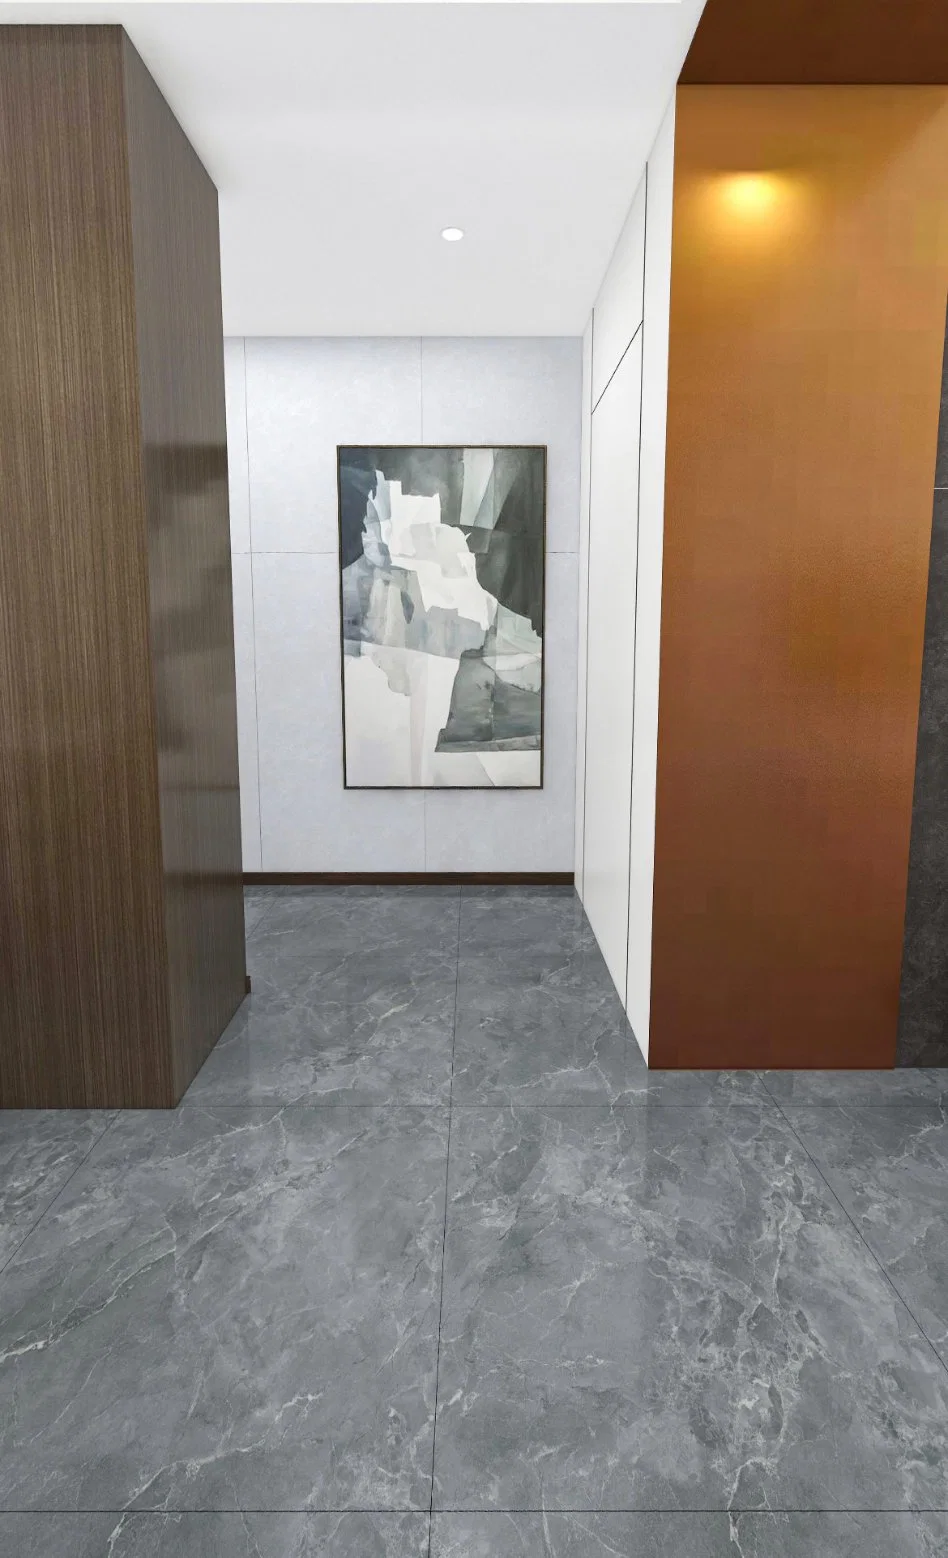 Guangdong Фошань Современная общая мраморная плитка серии 800*800 Римский серый Кирпич гостиной в современном стиле